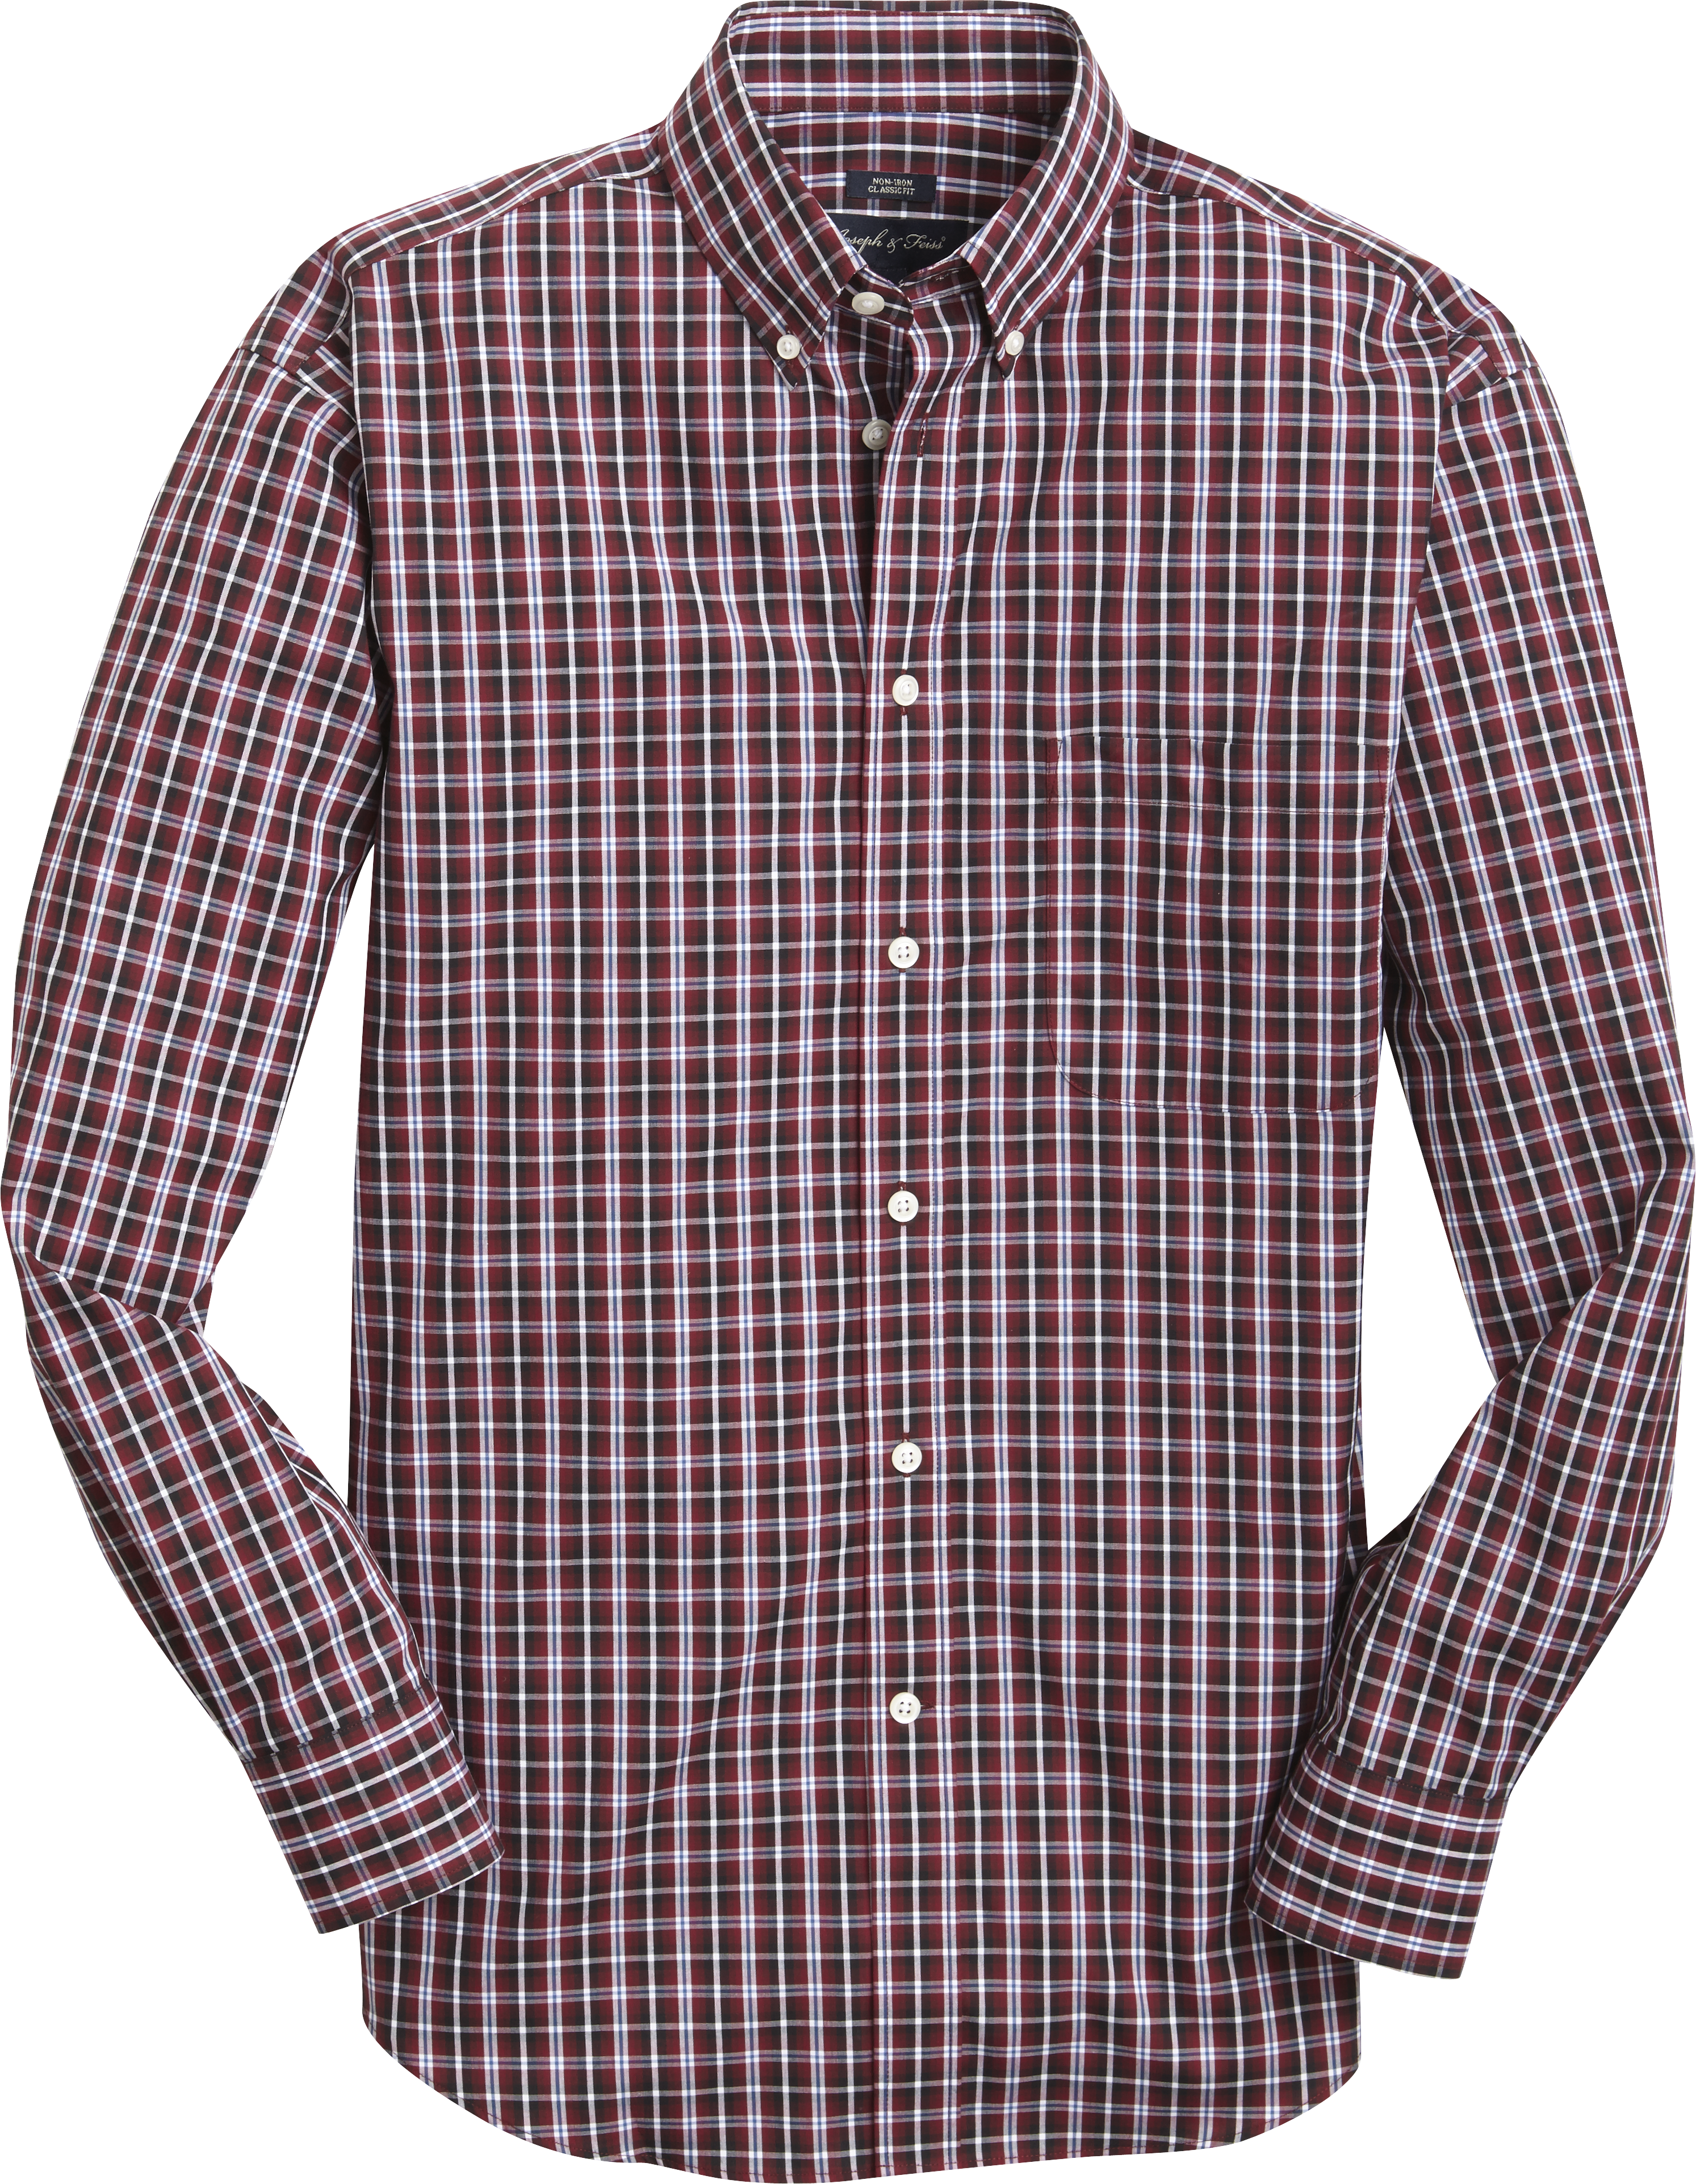 Men's Shirts – Polo Shirts, Casual Shirts & T-Shirts | Men's Wearhouse